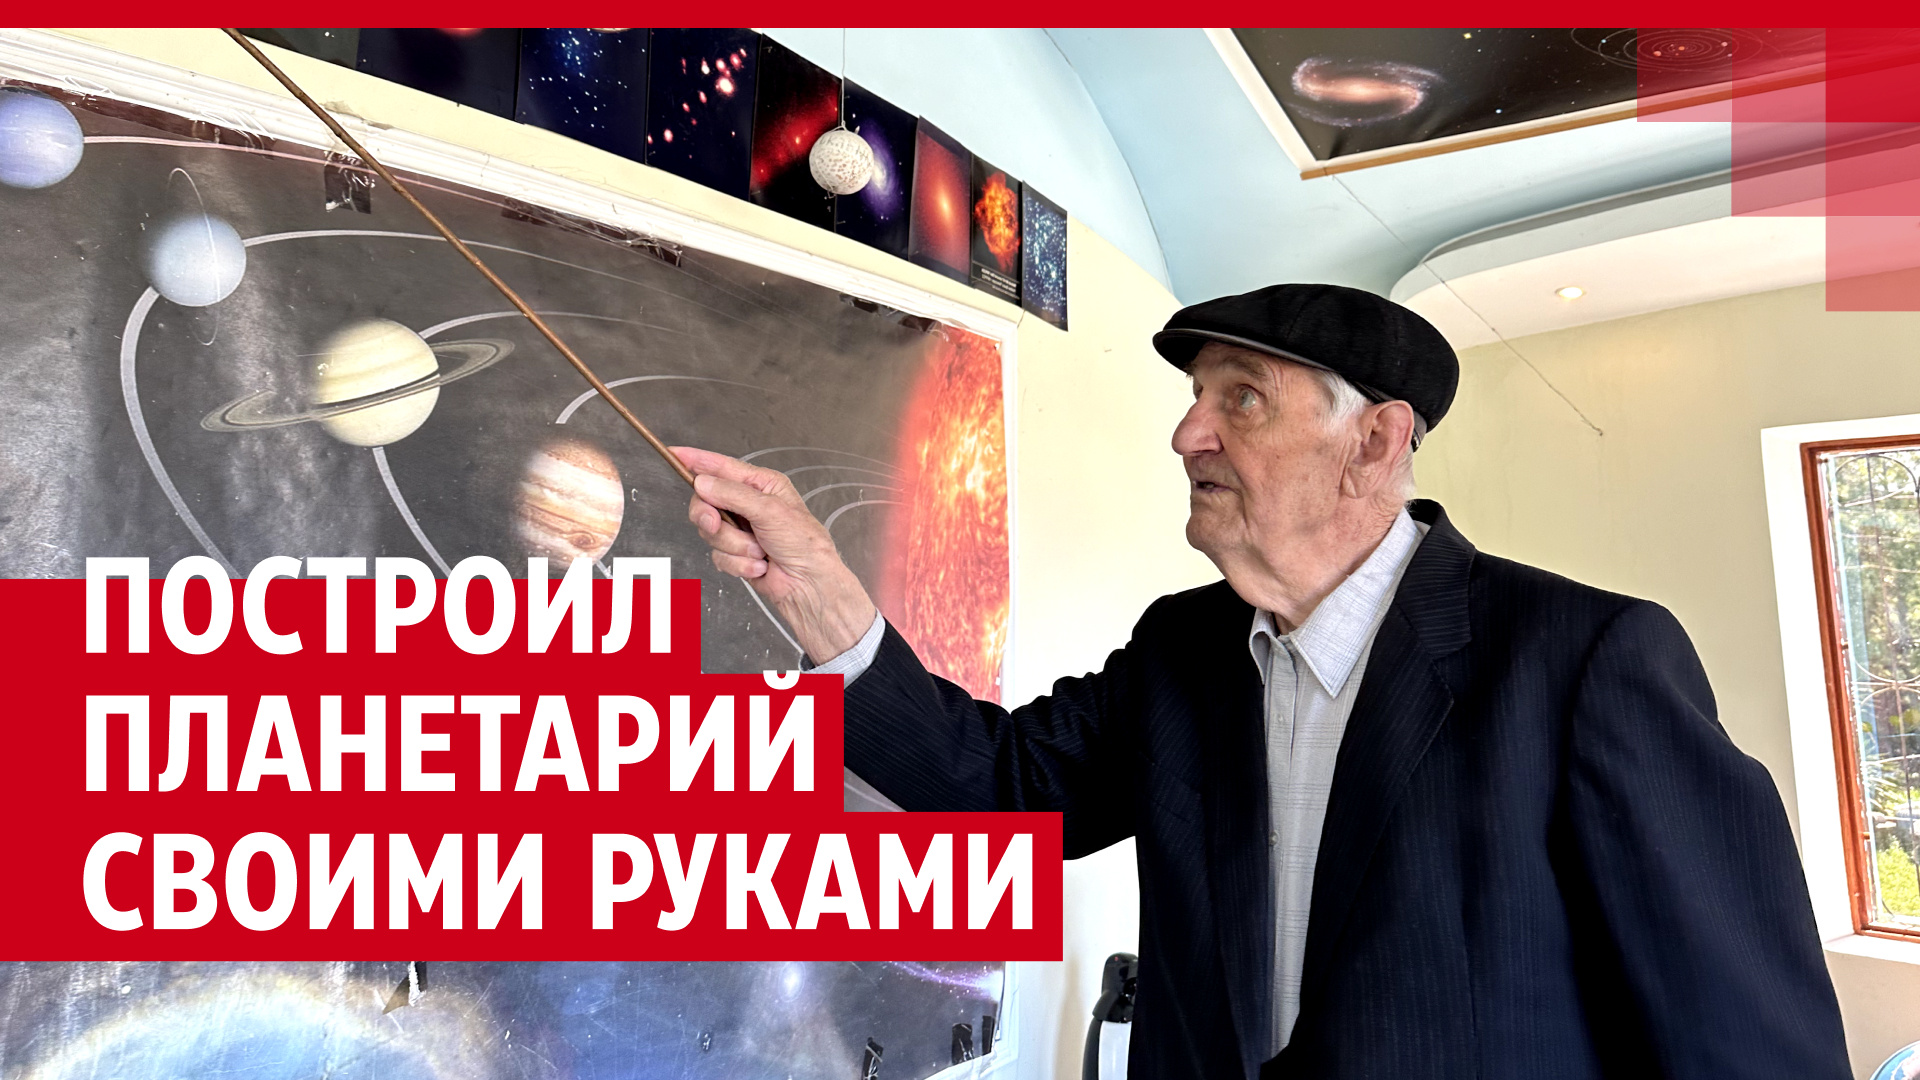 Сам построил планетарий. История пенсионера, который в 92 года рассказывает людям о космосе